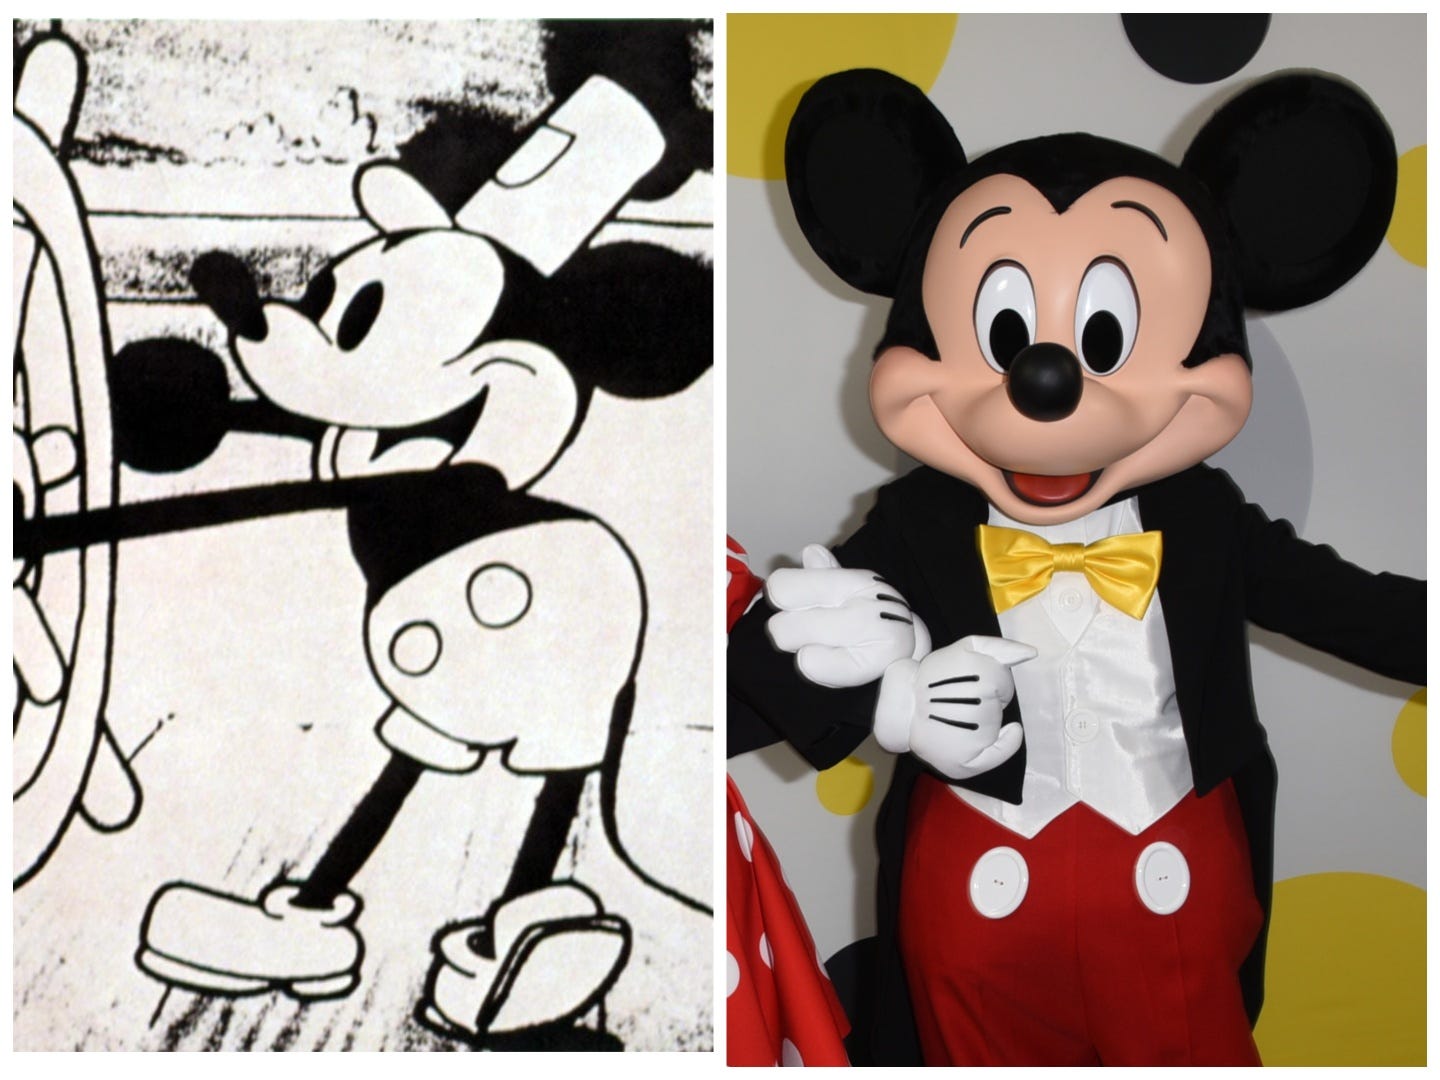 Neben dem Steamboat Willie Mickey-Cartoon und dem modernen Mickey-Maskottchen